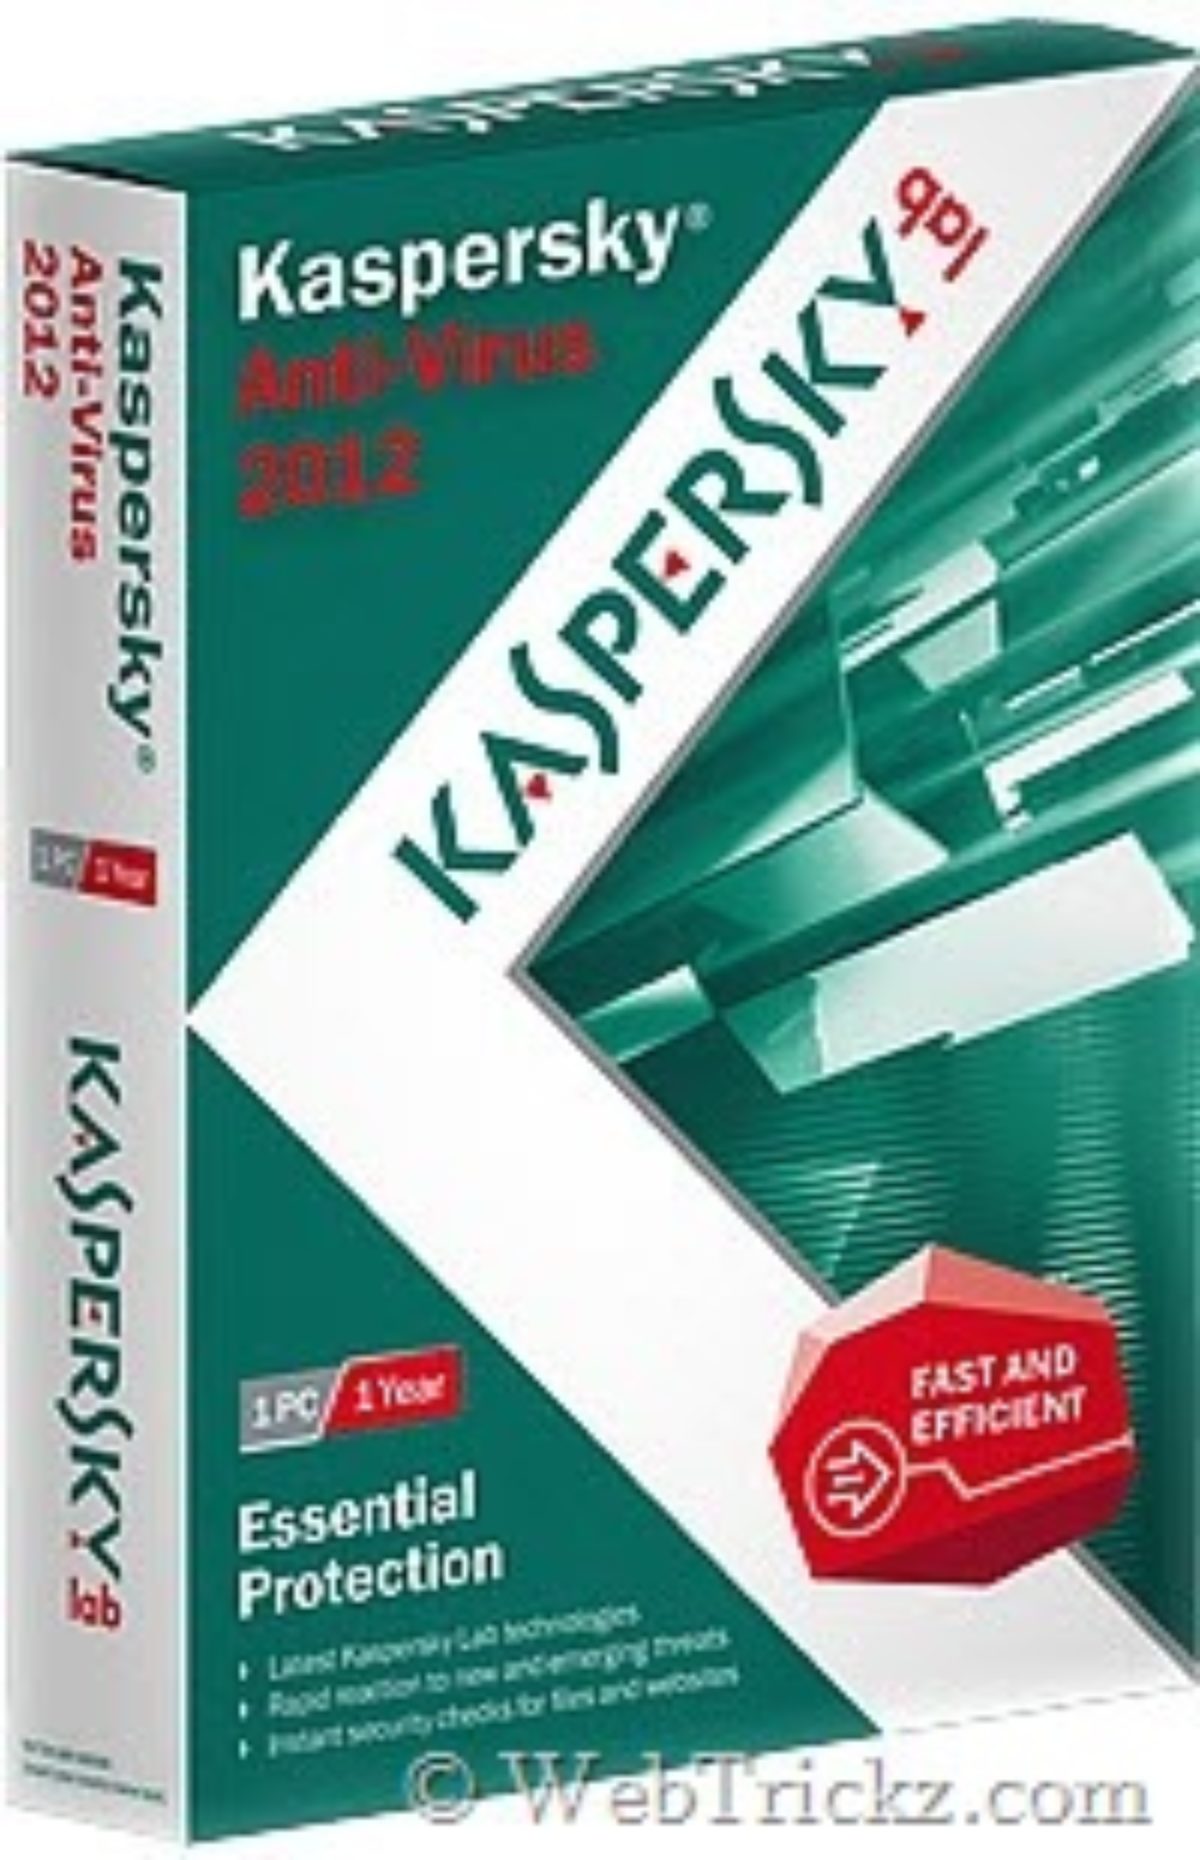 You are currently viewing Come Aiutarti A Ripristinare La Versione Di Prova Di Kaspersky Anti-Virus 2012?